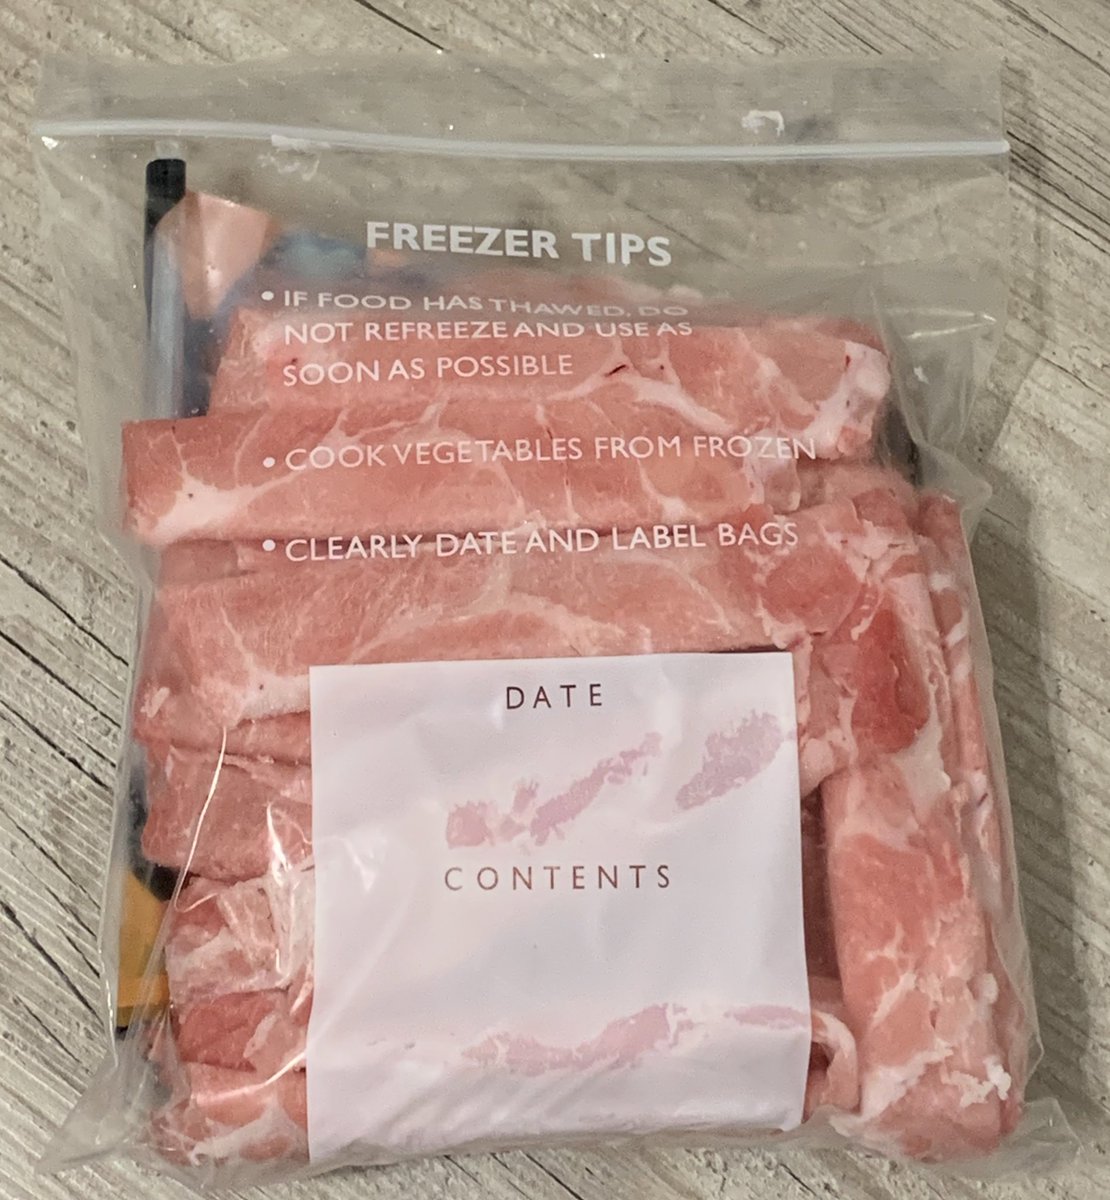 この冷凍薄切り肉シリーズ(牛・豚・ラム肉)すごく便利で大好きなのだが、パッケージがかさばるので、ジップロックに入れ替えて省スペースしてる。商品名書いてあるフィルムも切って入れてラベル代わりに。 